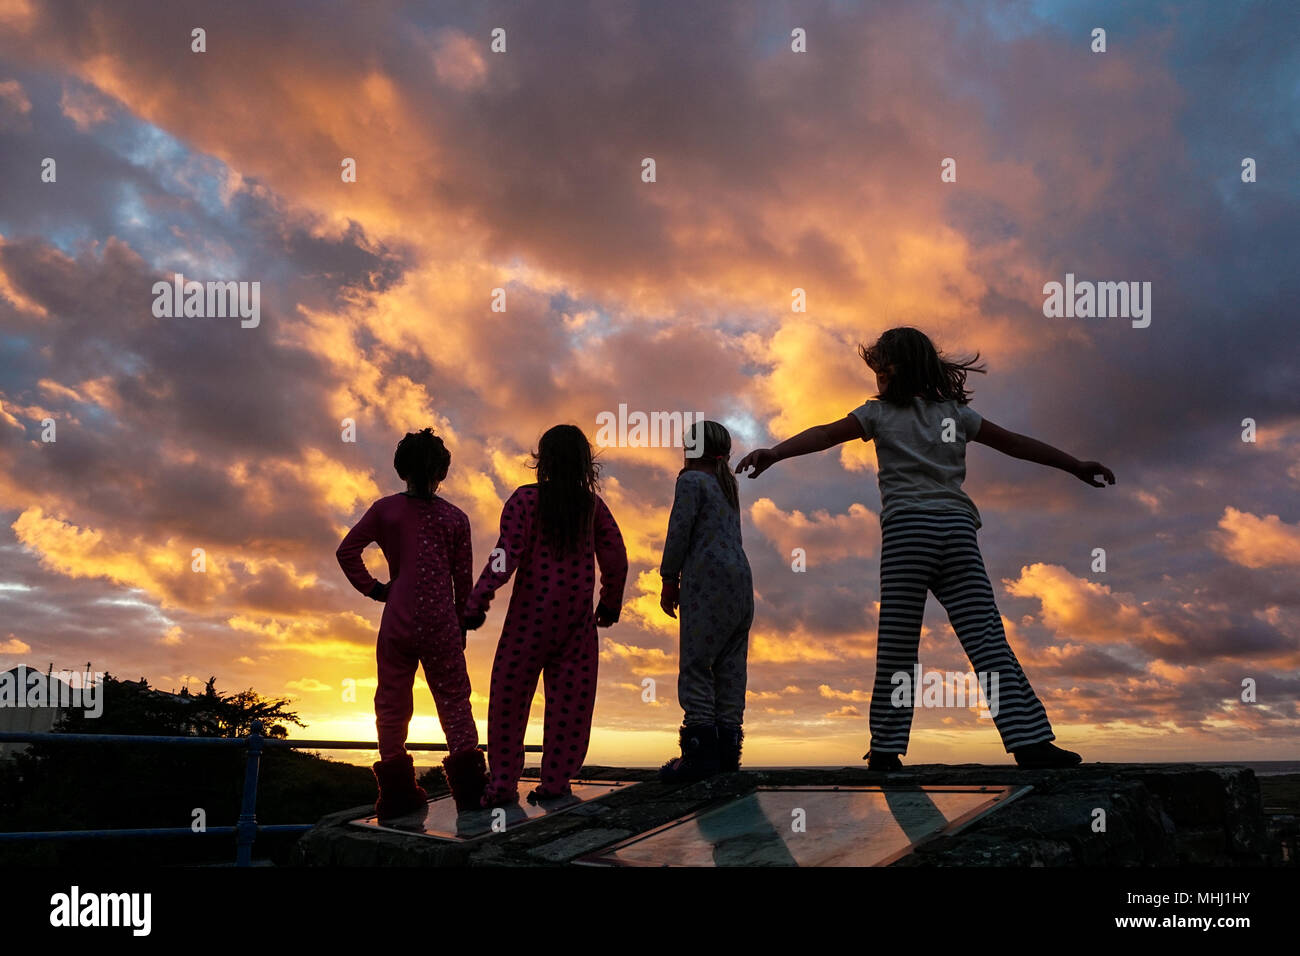 4 children watch the sunset on summer holidays in Devon, UK Stock Photo